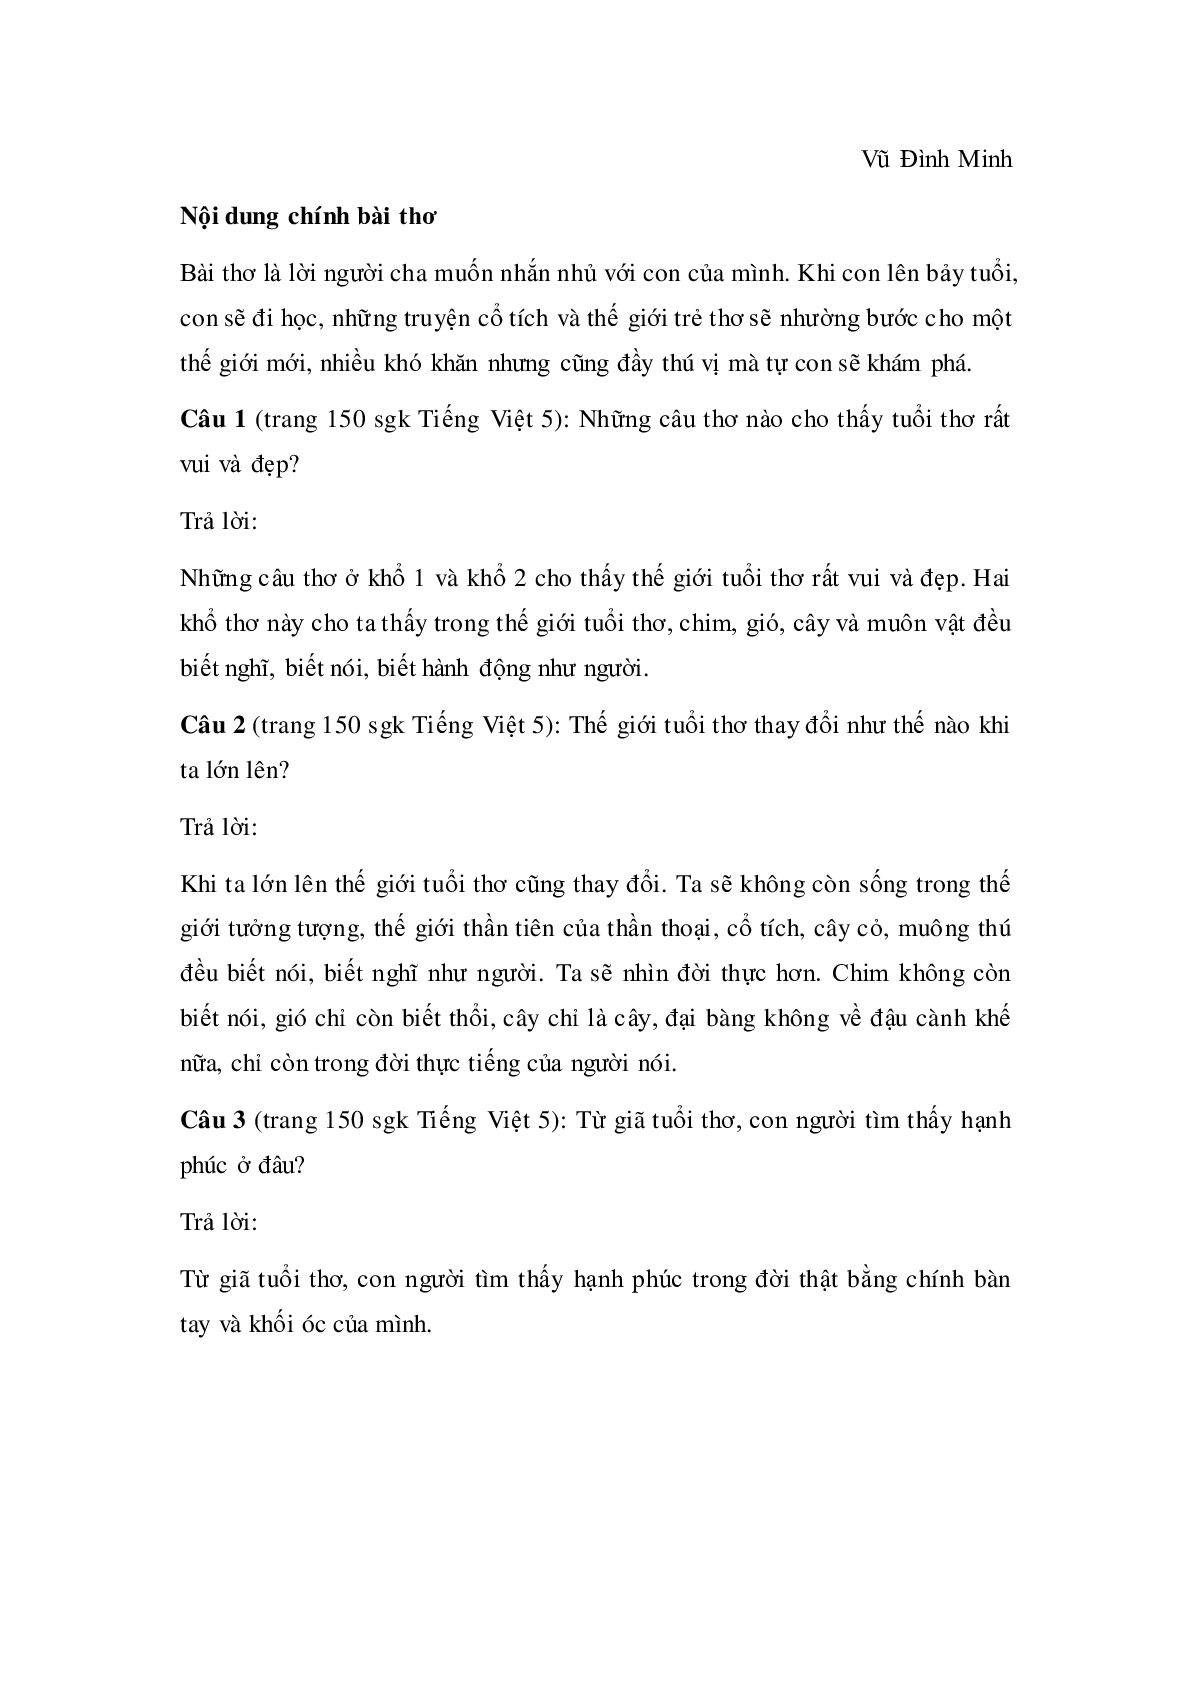 Soạn Tiếng Việt lớp 5; Tập đọc: Sang năm con lên bảy mới nhất (trang 2)